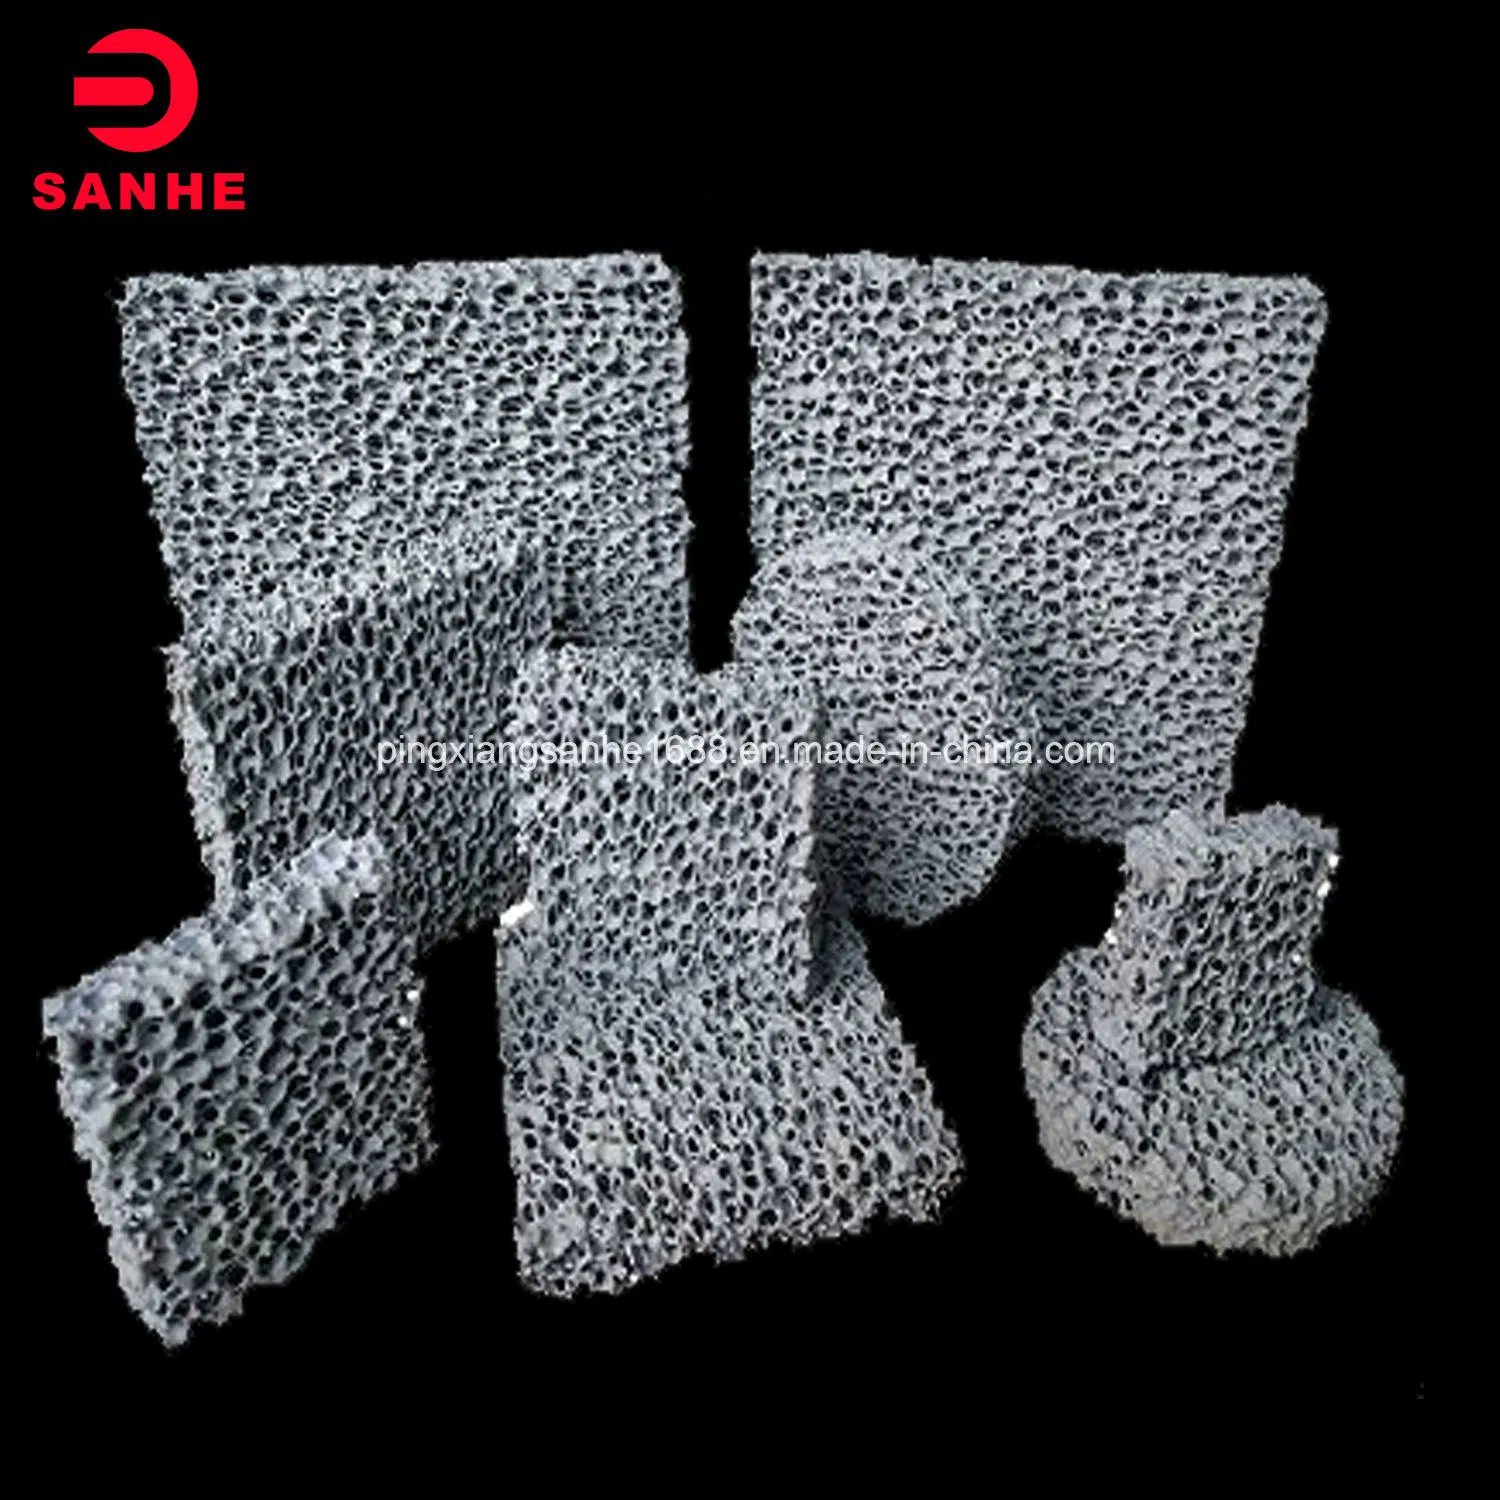 Square/Round Alumina/Silicon Carbide/Zirconia/Magnesia Ceramic Foam Filter Plate